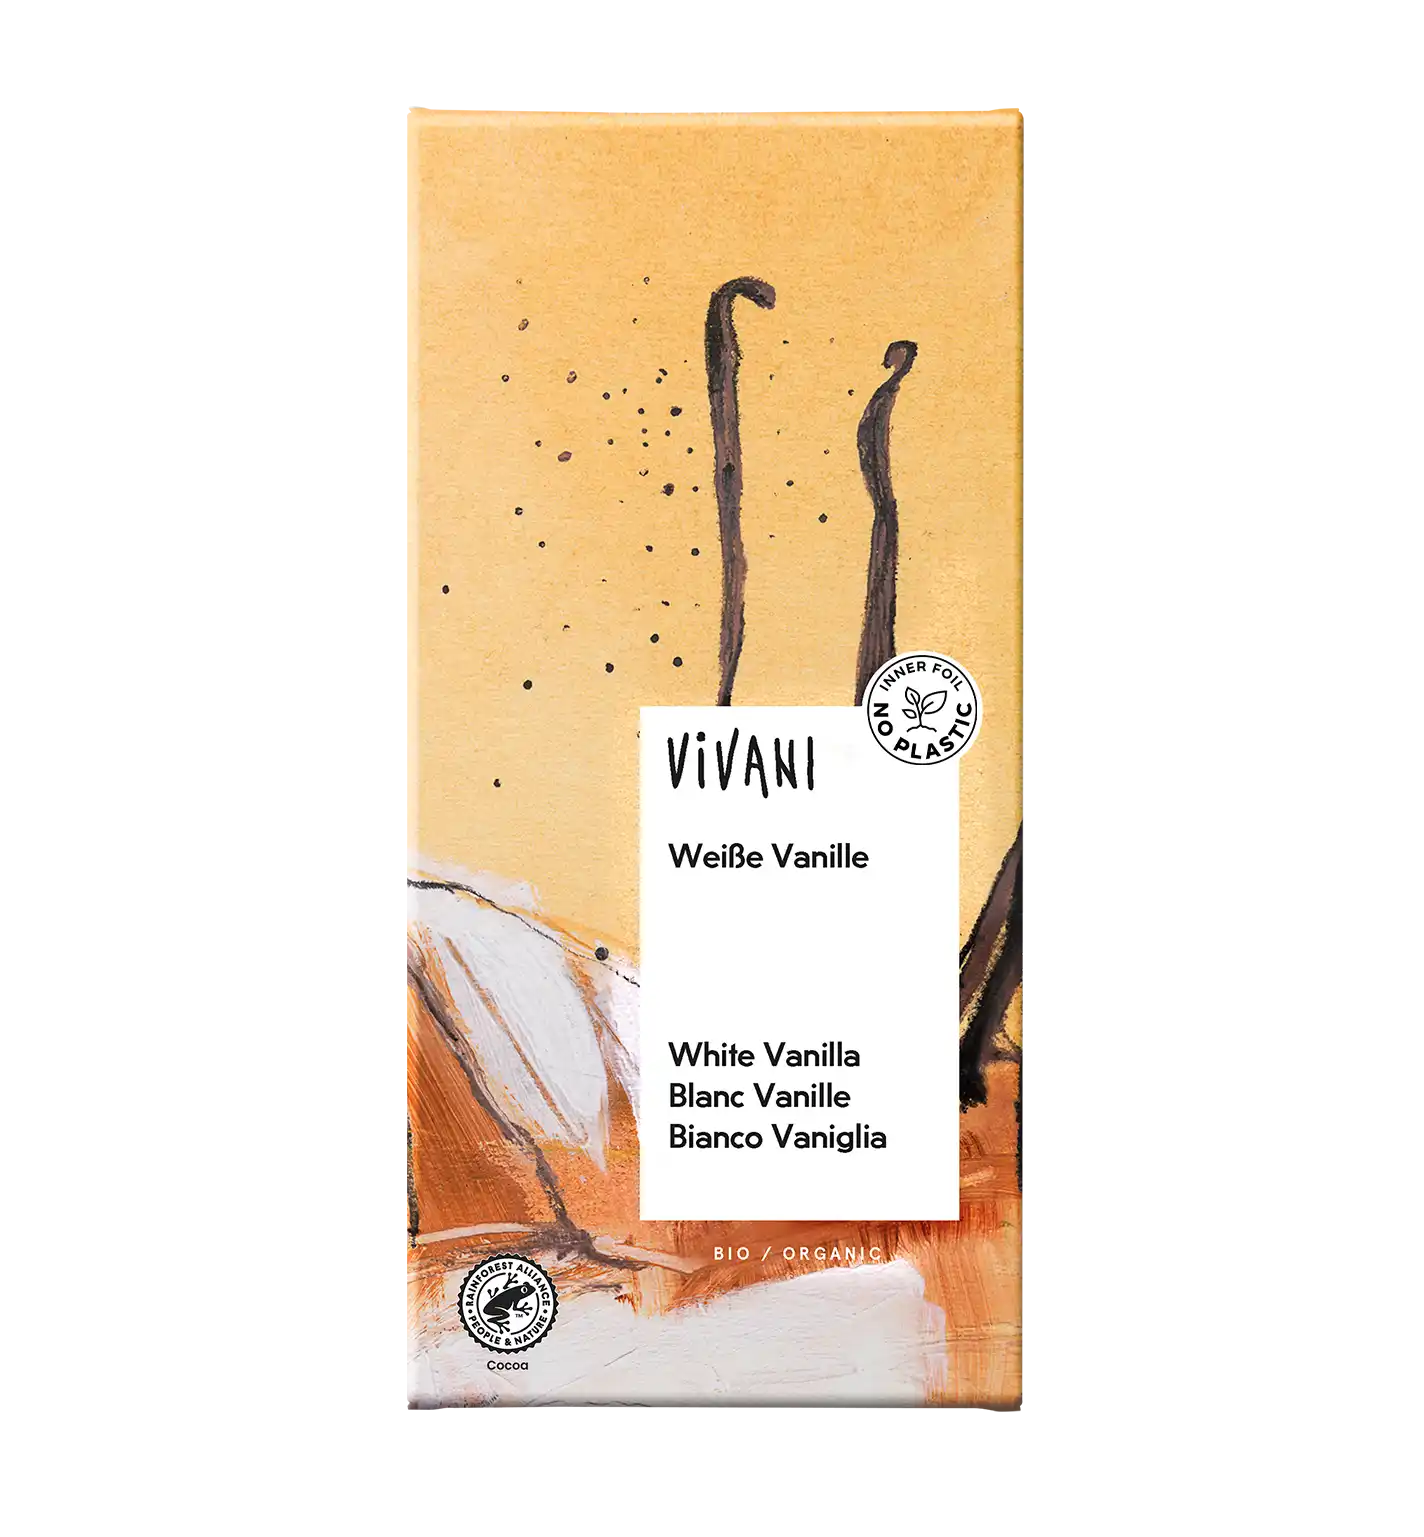 VIVANI's award-winning organic White Vanilla Chocolate